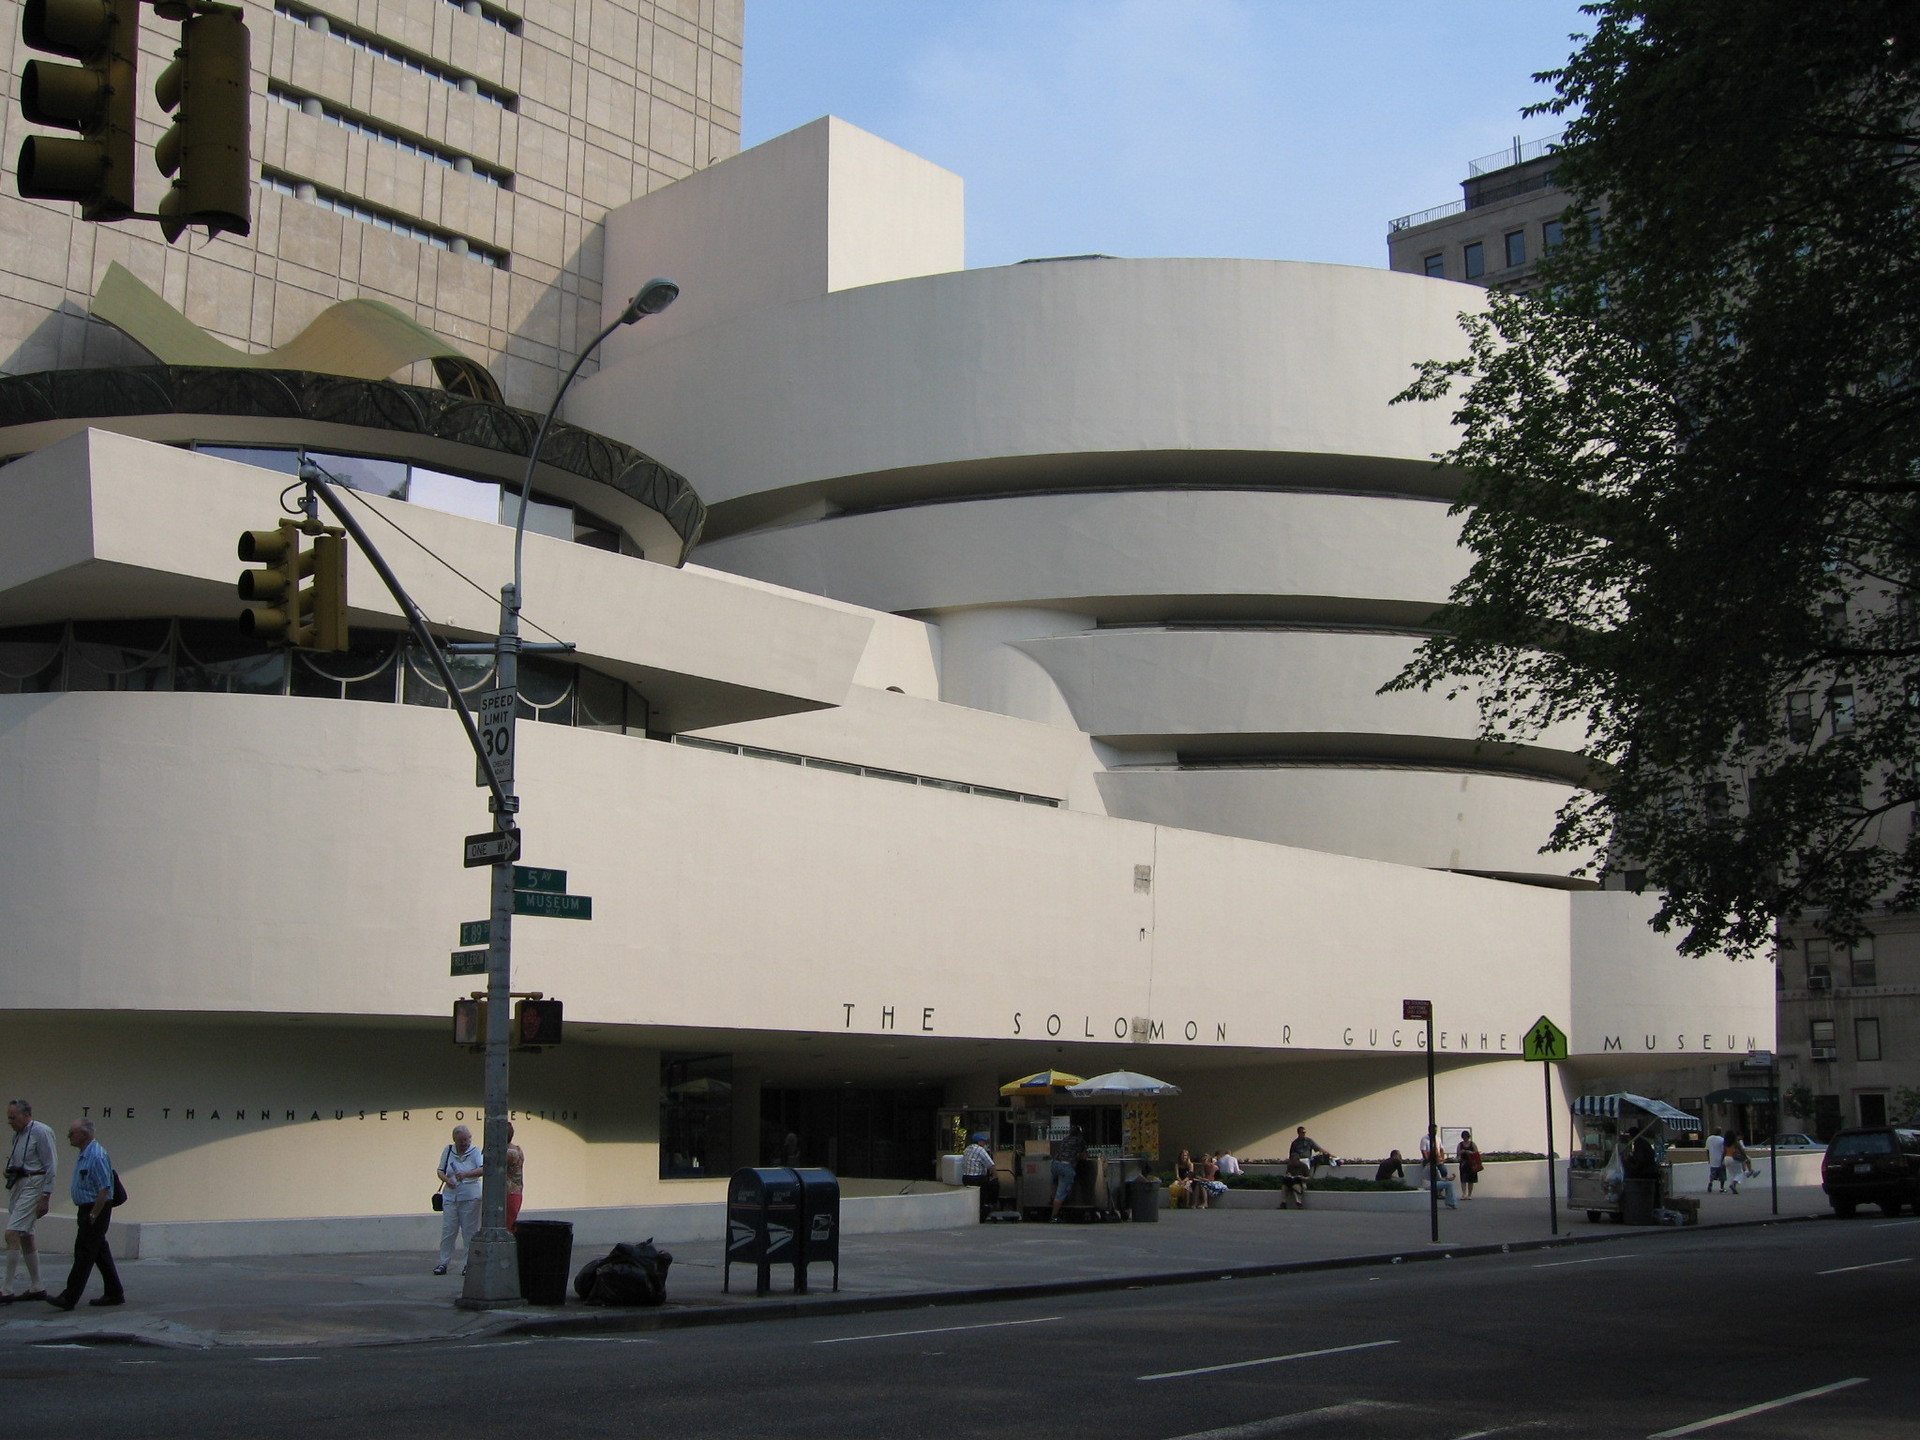 The Guggenheim Nyc